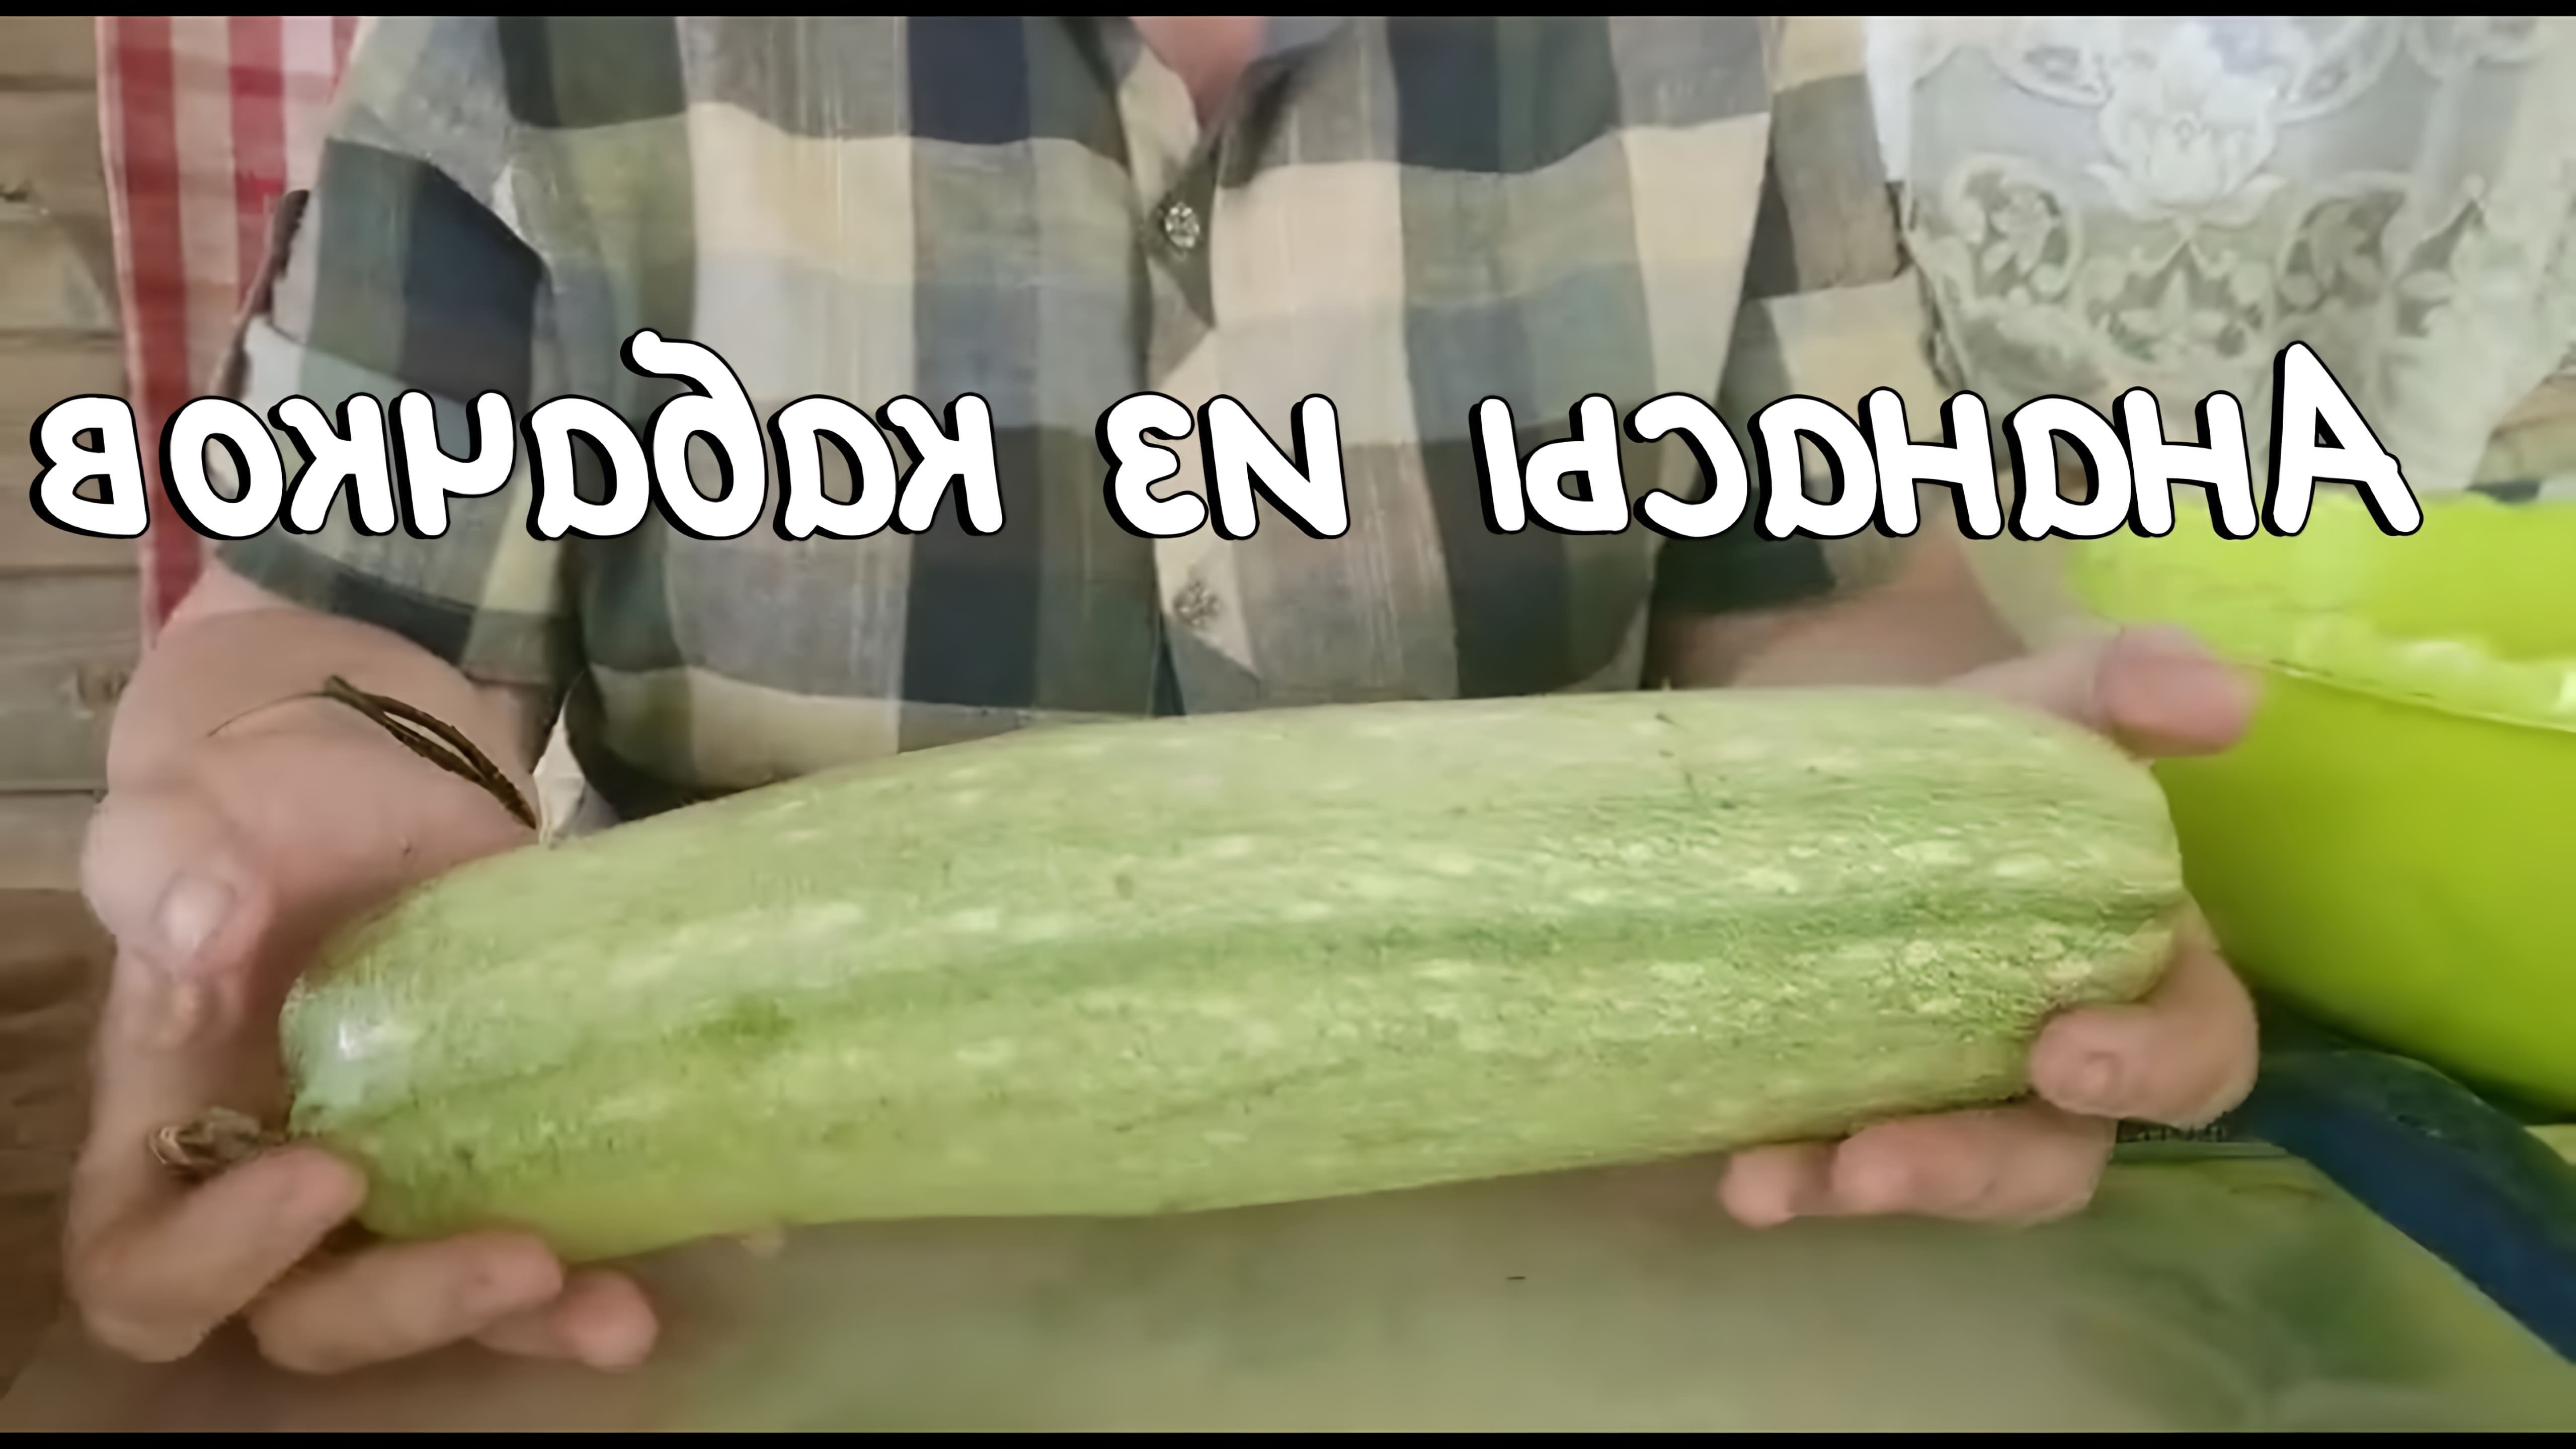 В этом видео демонстрируется процесс приготовления ананасов из кабачков